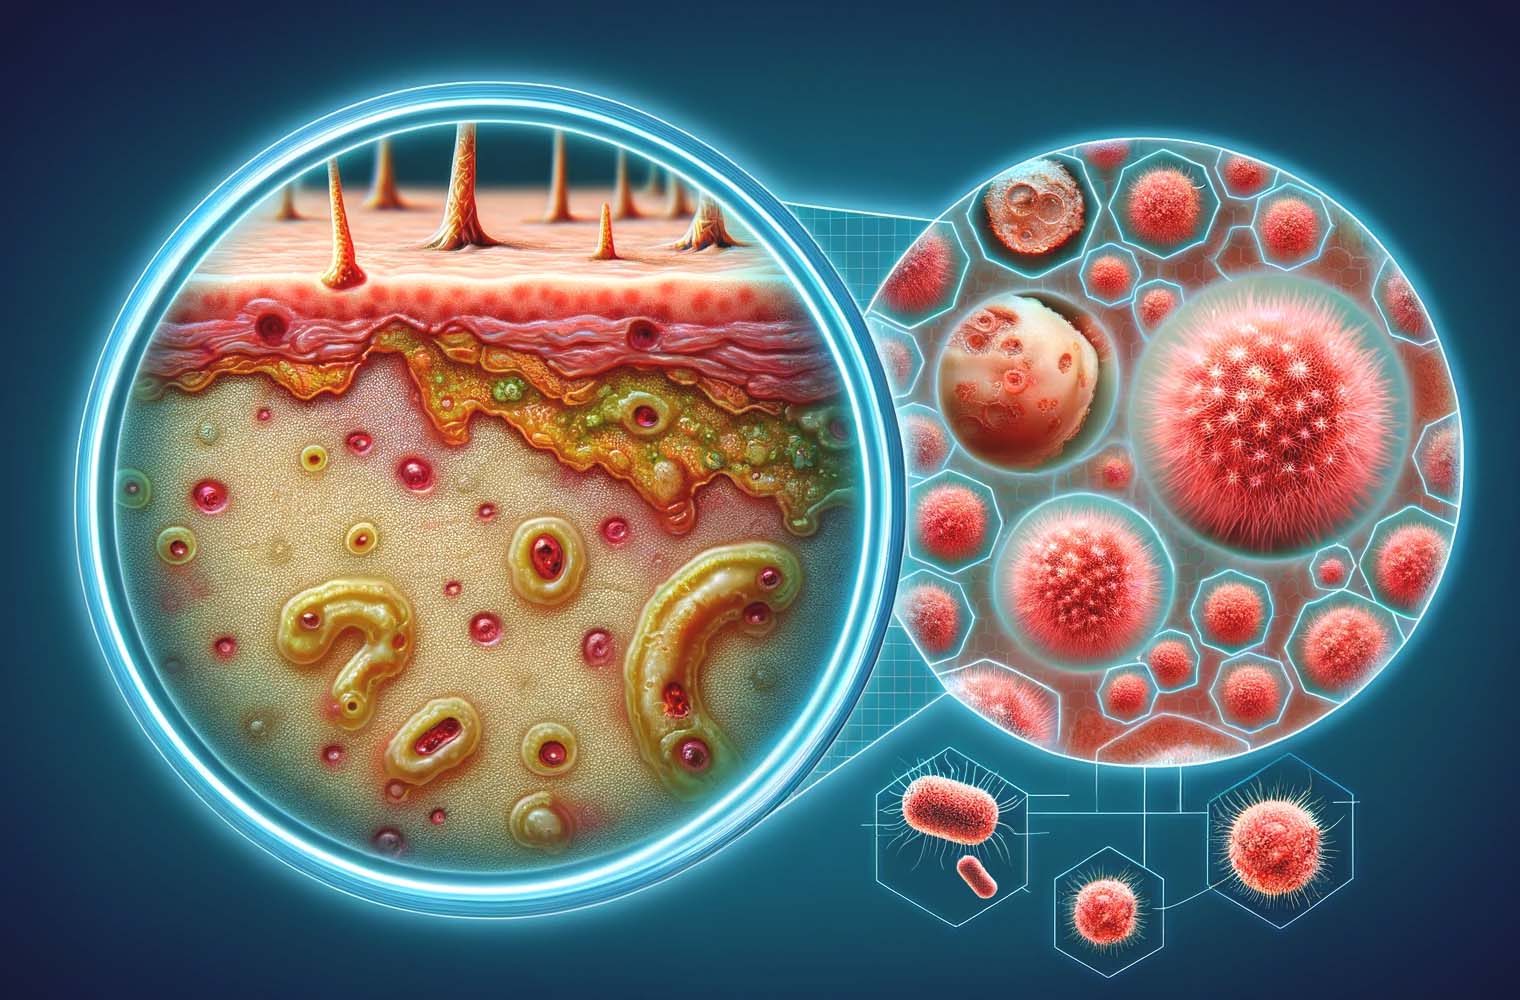 Aké kožné infekcie spôsobujú baktérie